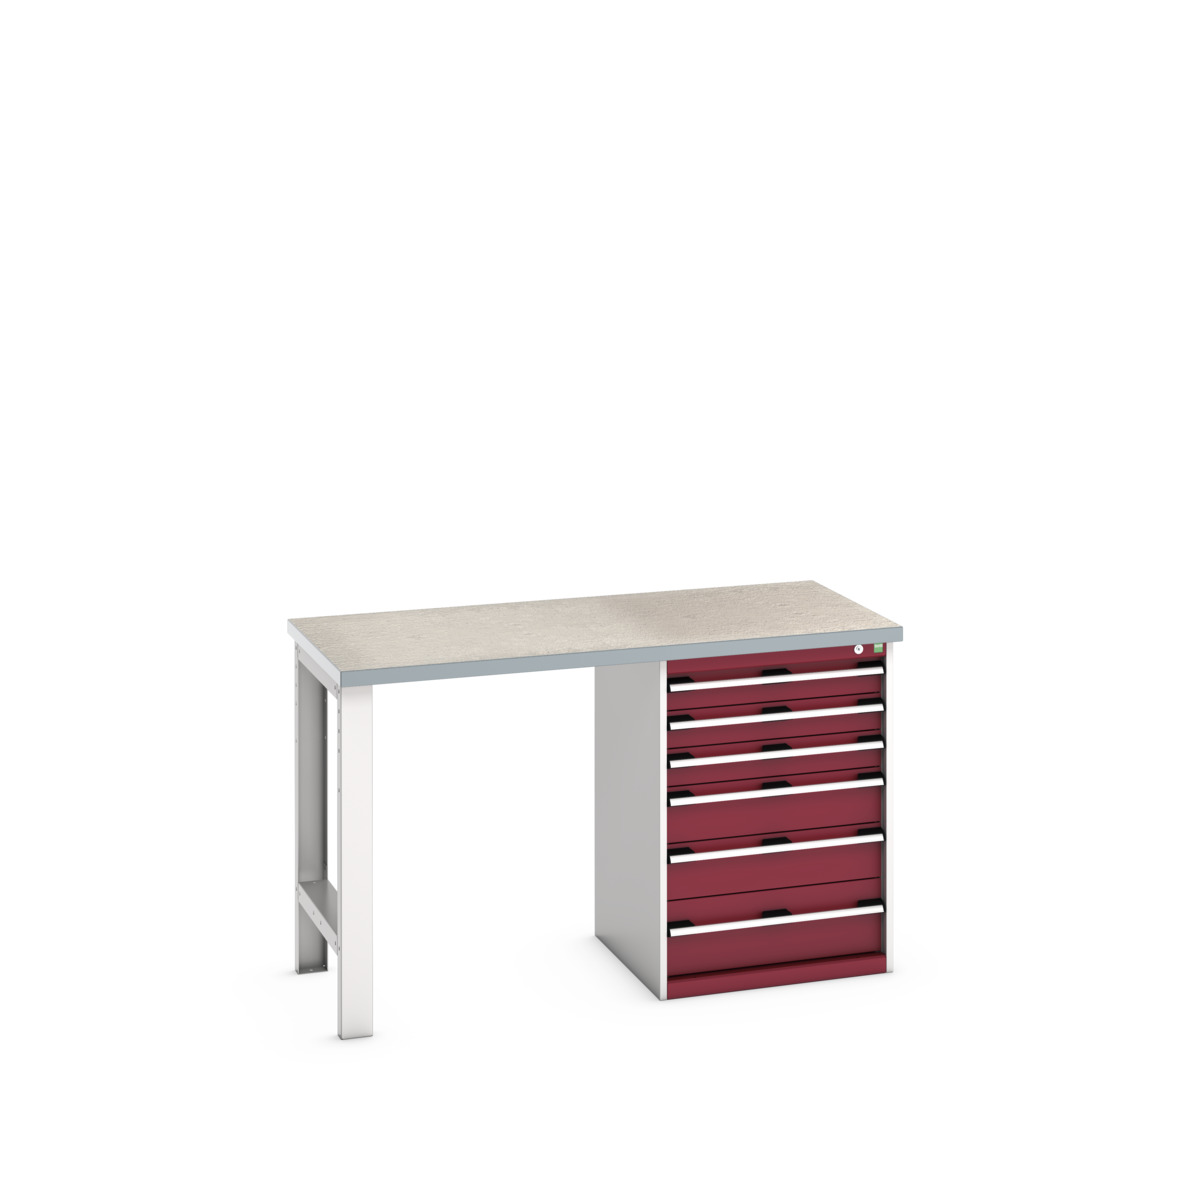 41003493.24V - cubio pedestal bench (lino)